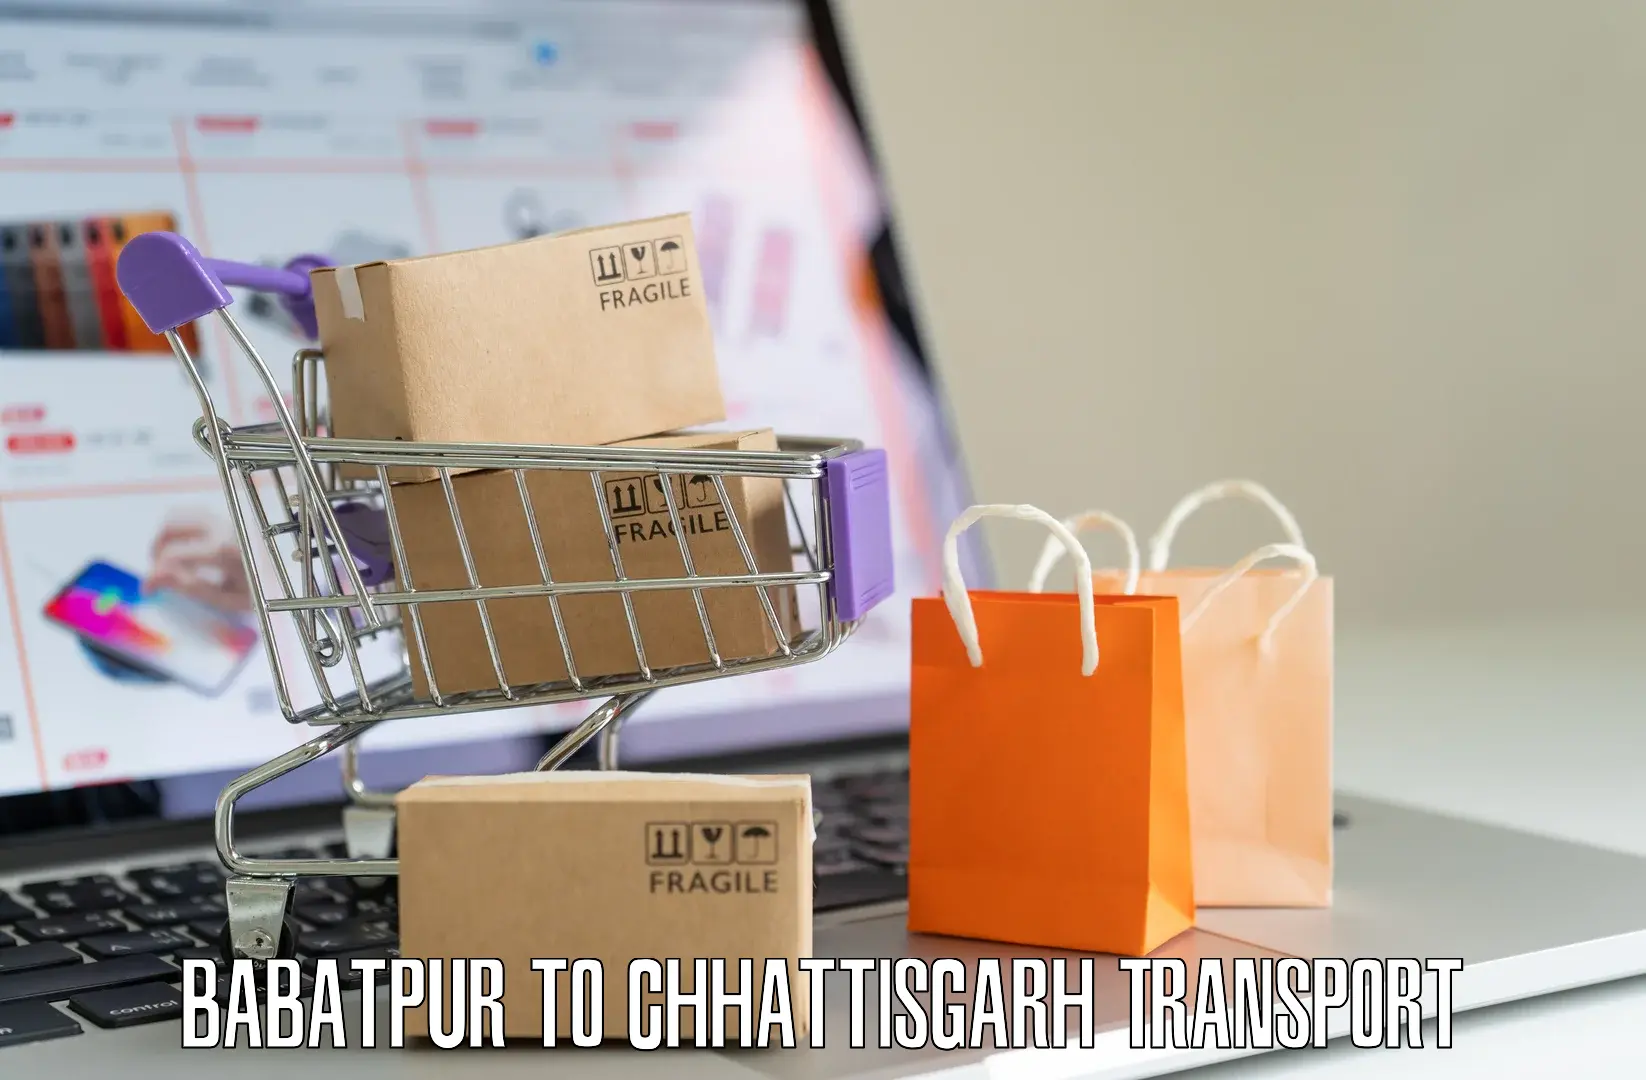 Furniture transport service Babatpur to Bhatapara